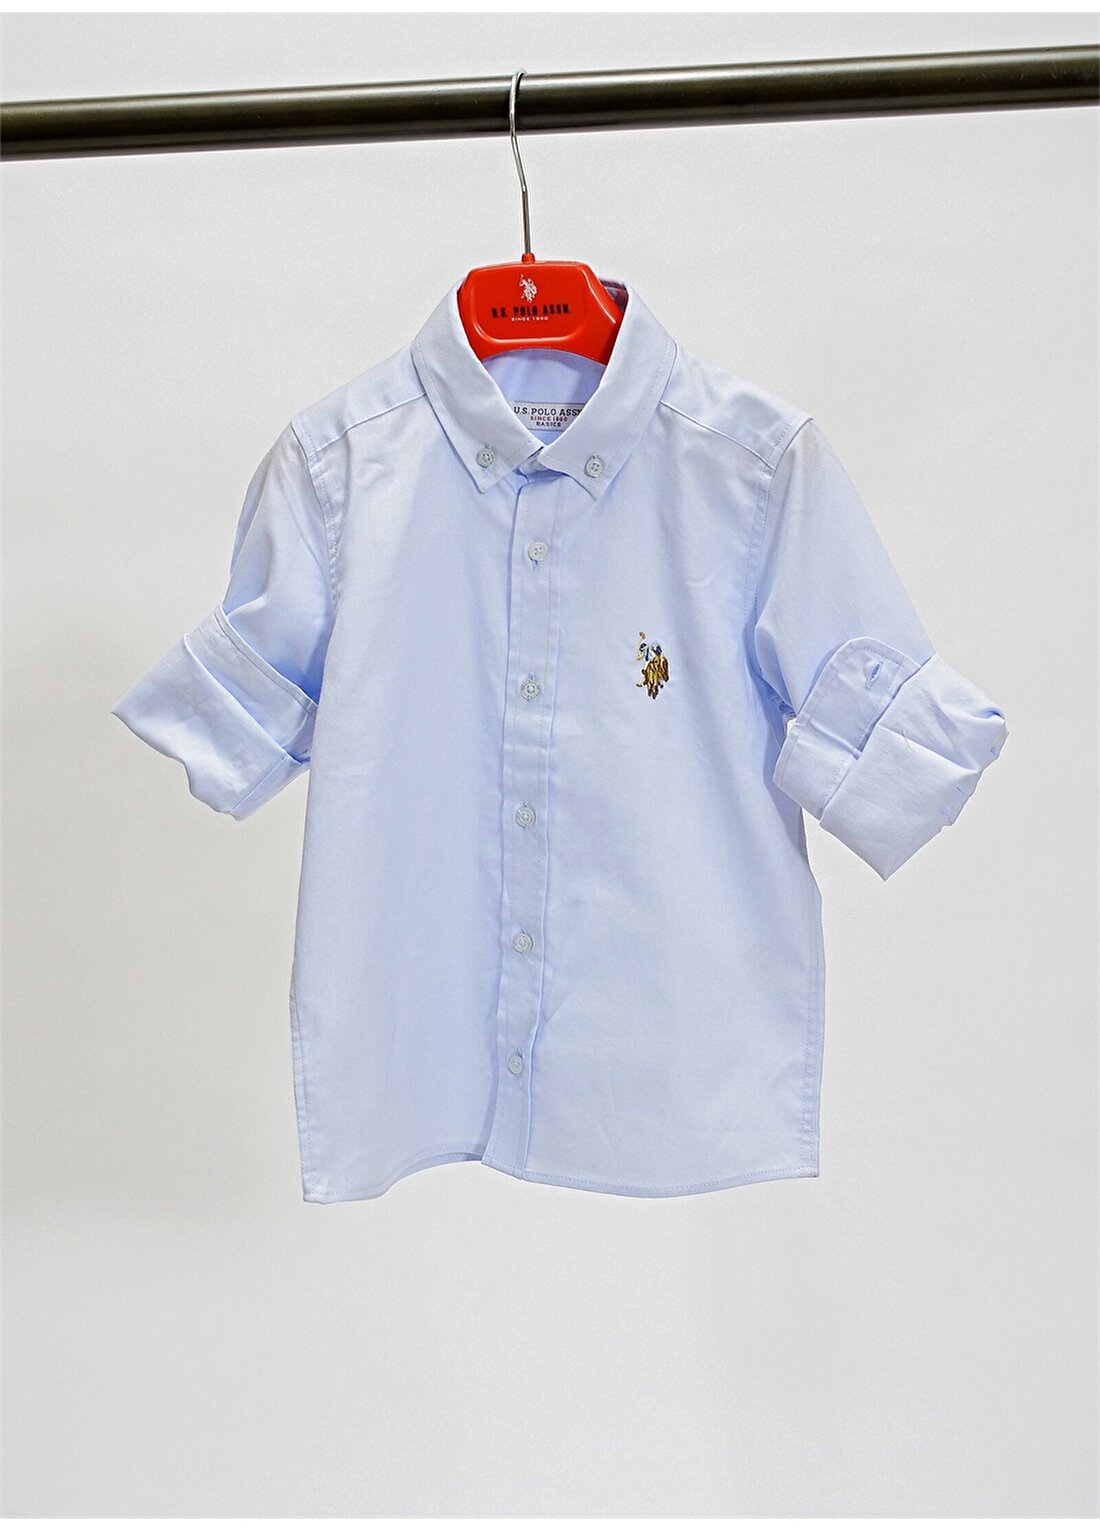 U.S. Polo Assn. Desenli Açık Mavi Erkek Çocuk Gömlek CEDCOLORKIDS021Y-VR003